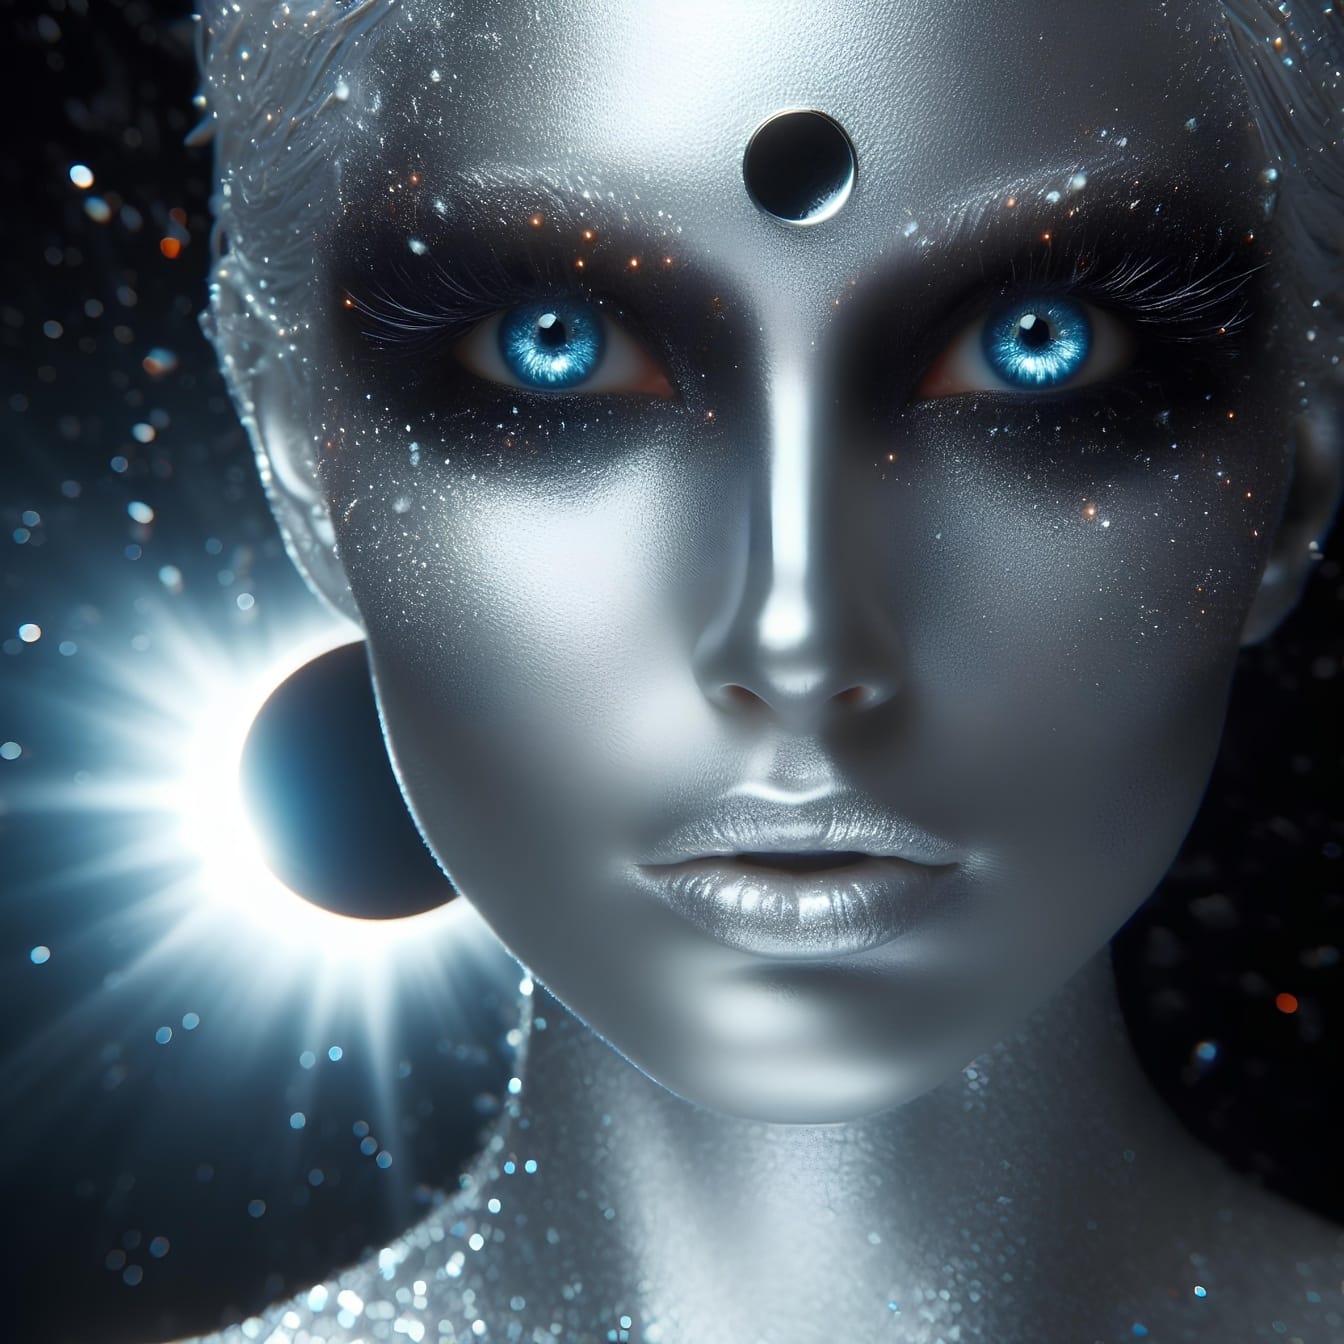 Grafikk av fantasikvinne med sølvhud og blå øyne som viser kvantehypnose